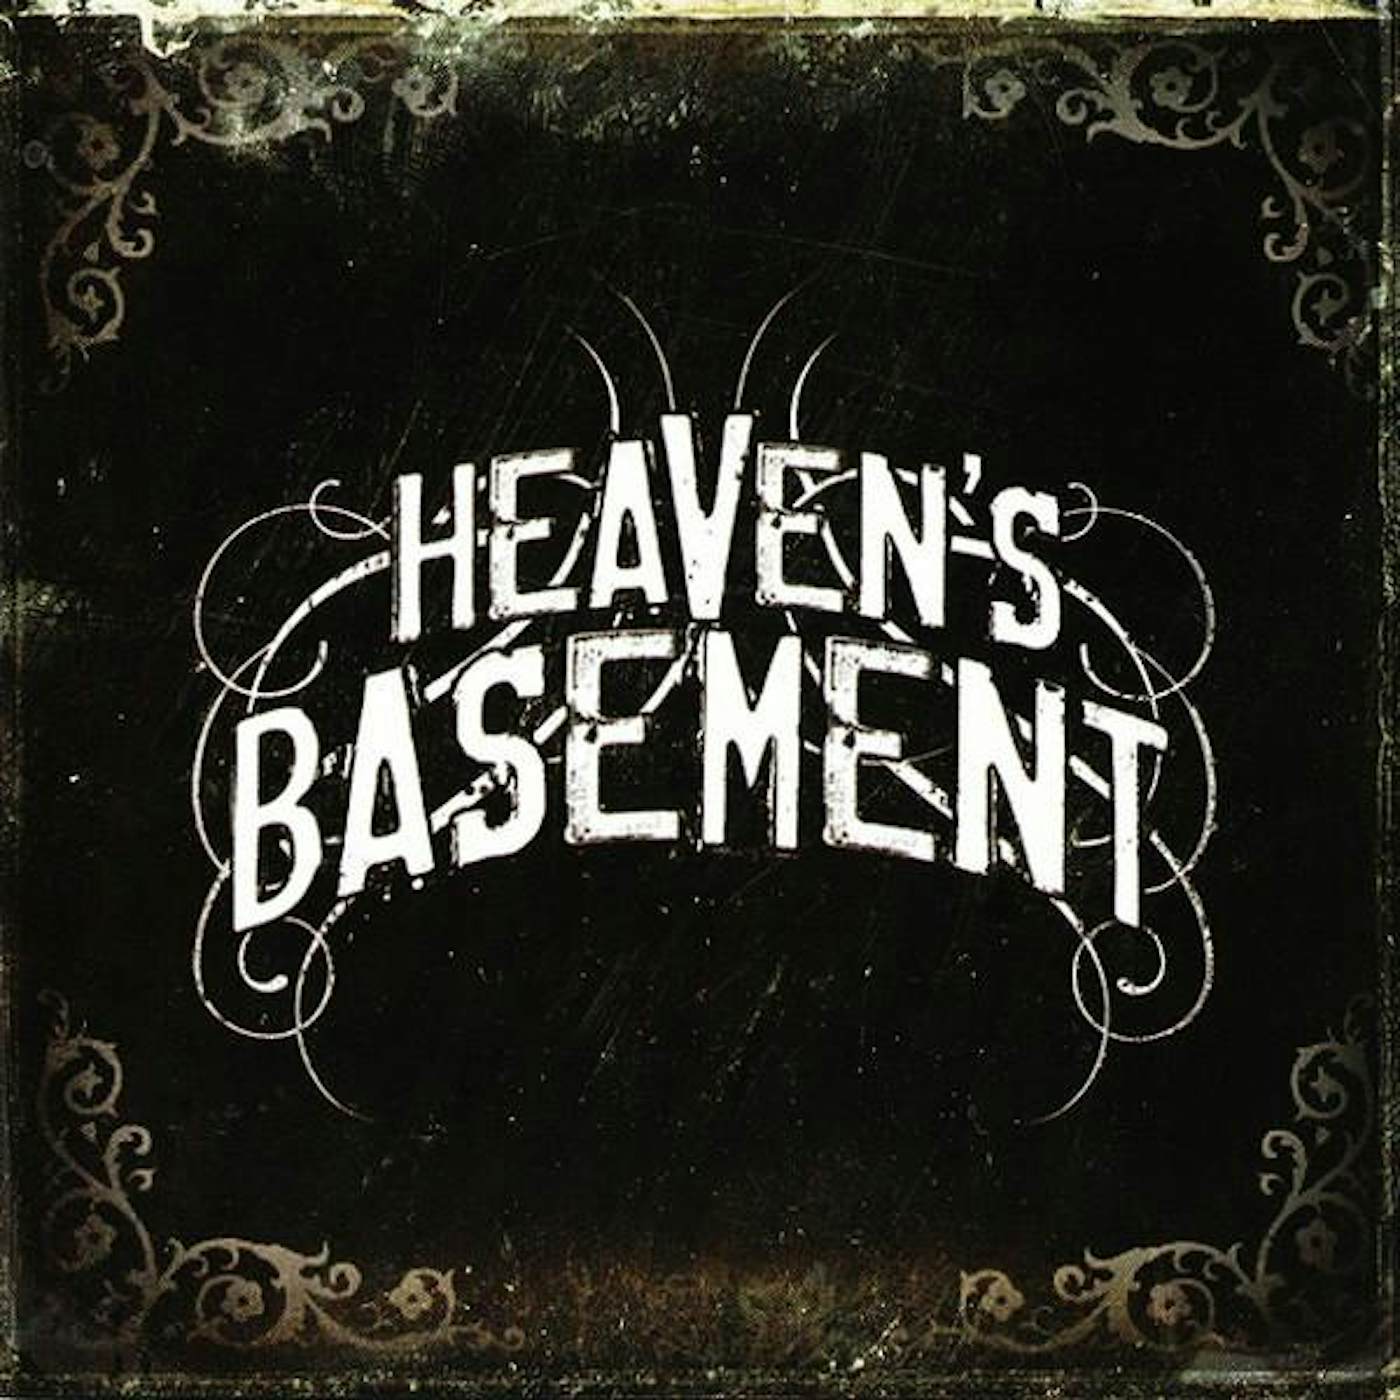 Heaven's Basement HEAVEN BASEMENT CD